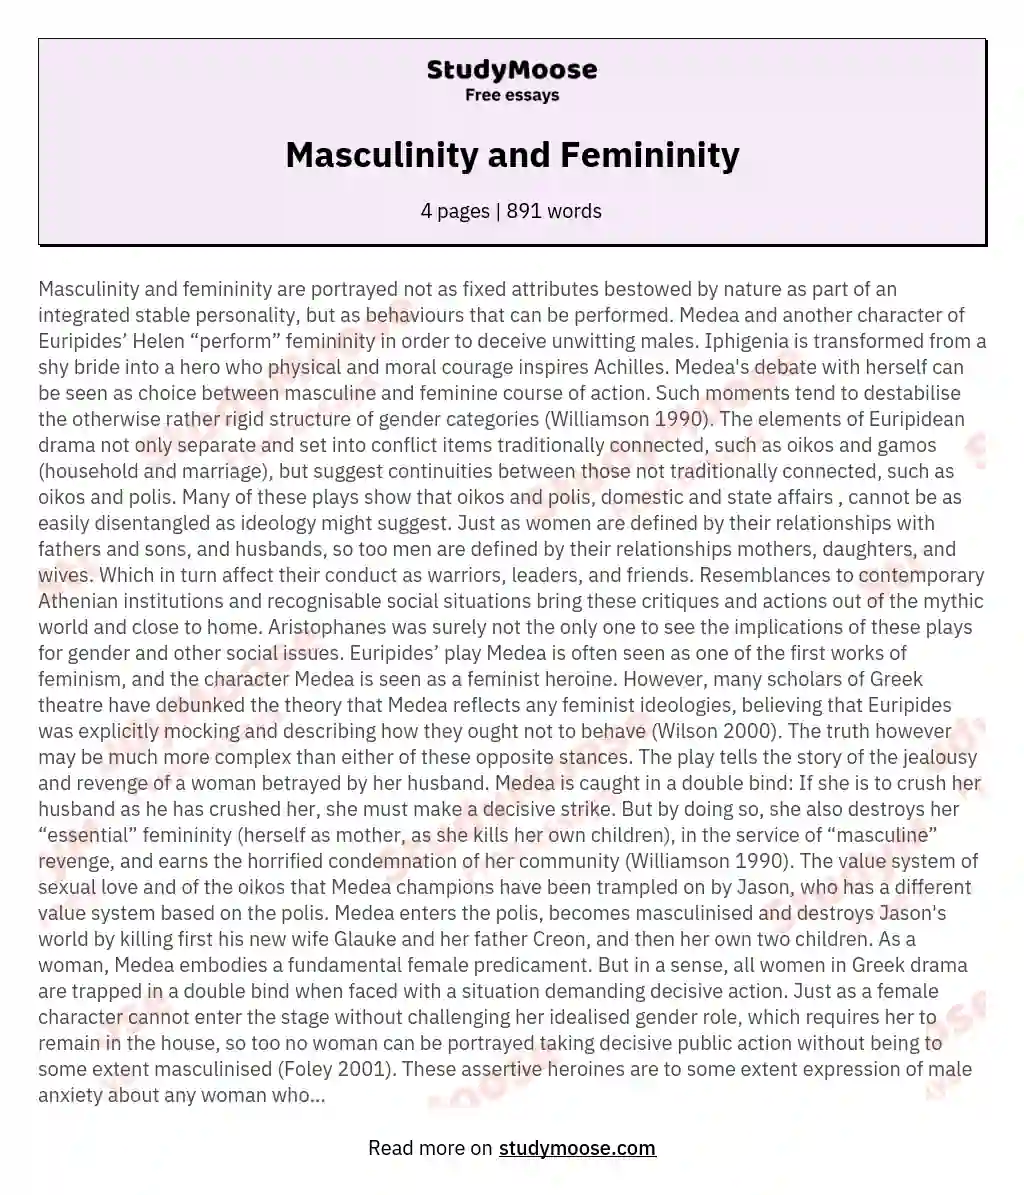 Masculinity and Femininity essay